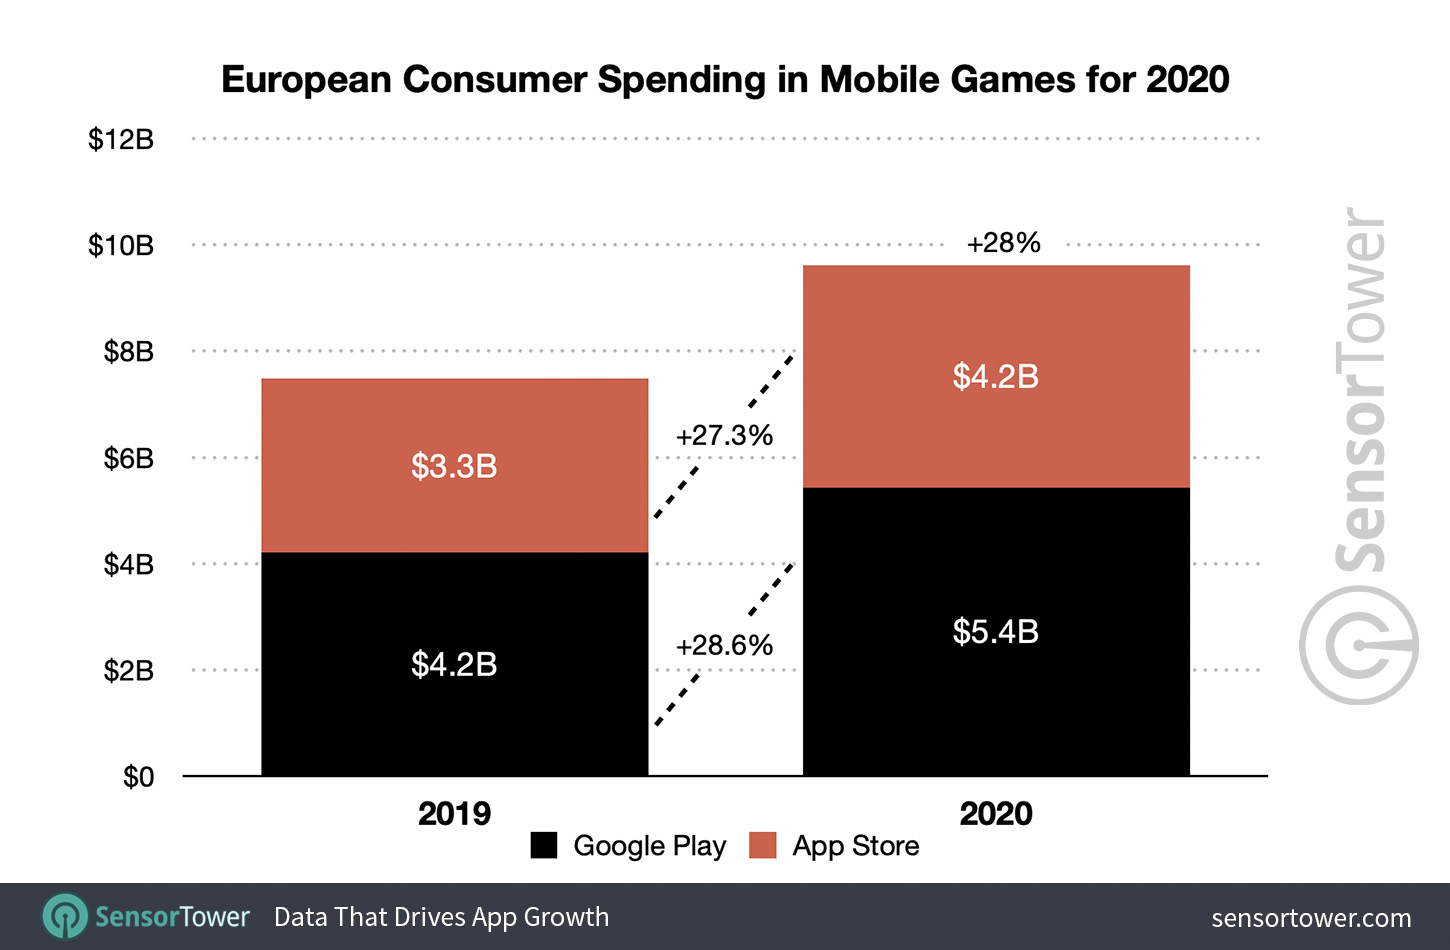 European Consumer Spending in Mobile Games for 2020